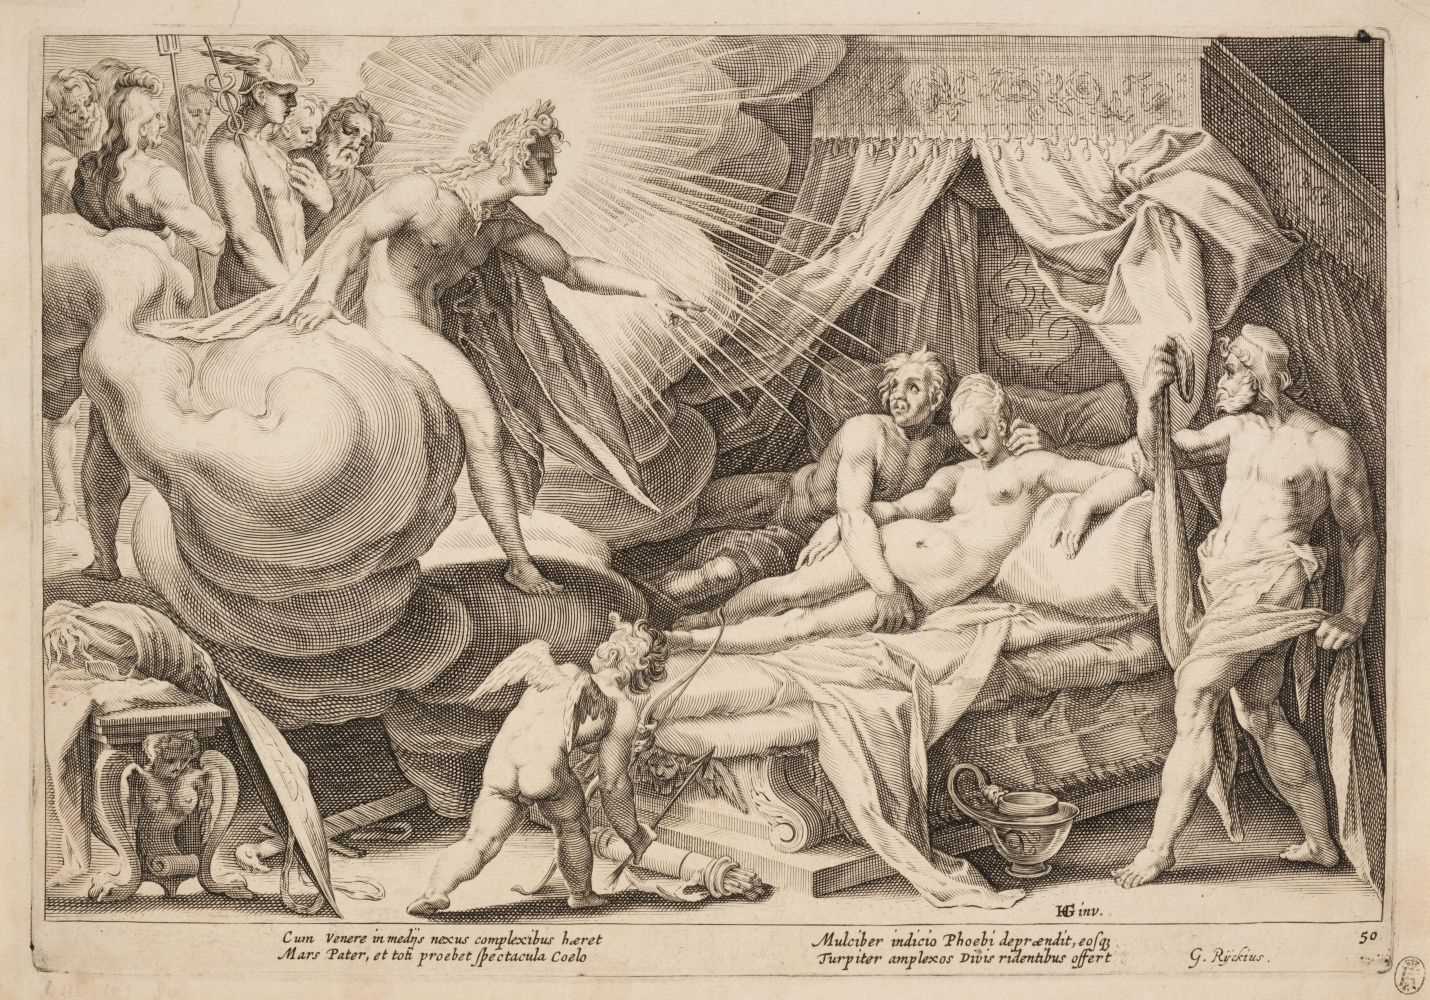 Lot 371 - Baudous (Robert Willemsz de, 1574-1659). Phoebus exposing Mars and Venus